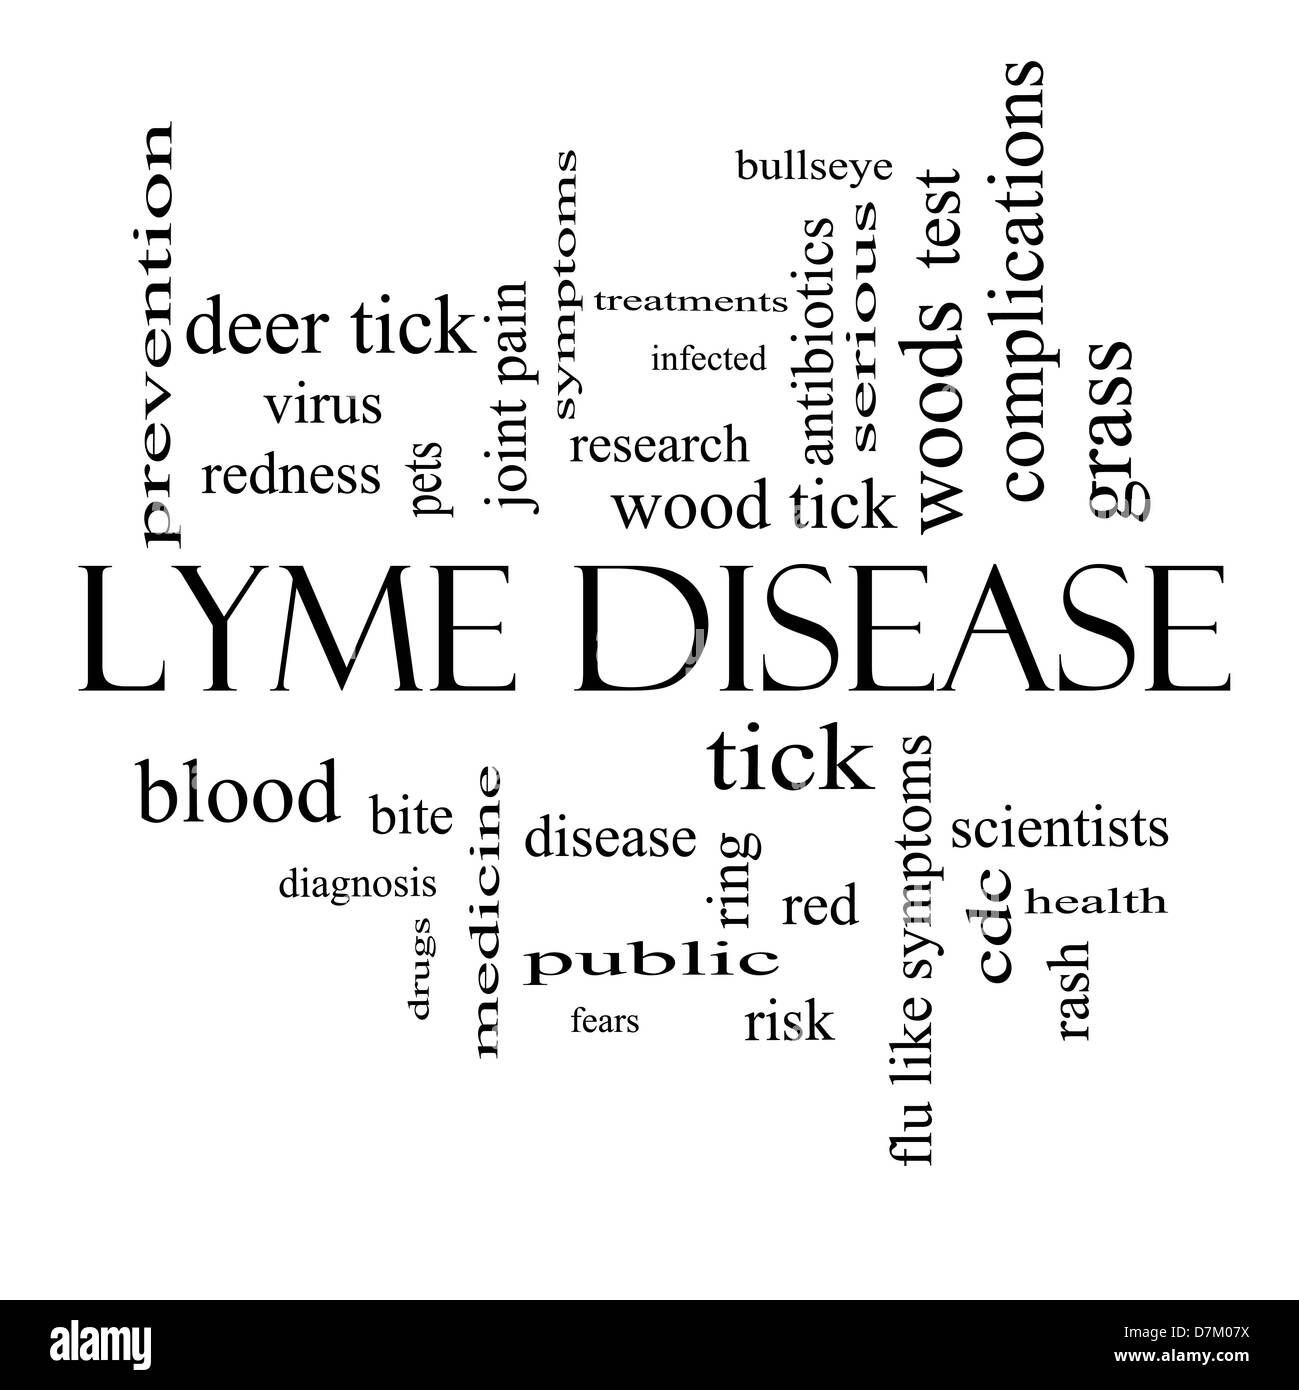 La maladie de Lyme mot Concept Cloud en noir et blanc avec beaucoup de termes comme deer tick, sang, Bullseye, mordent et plus encore. Banque D'Images